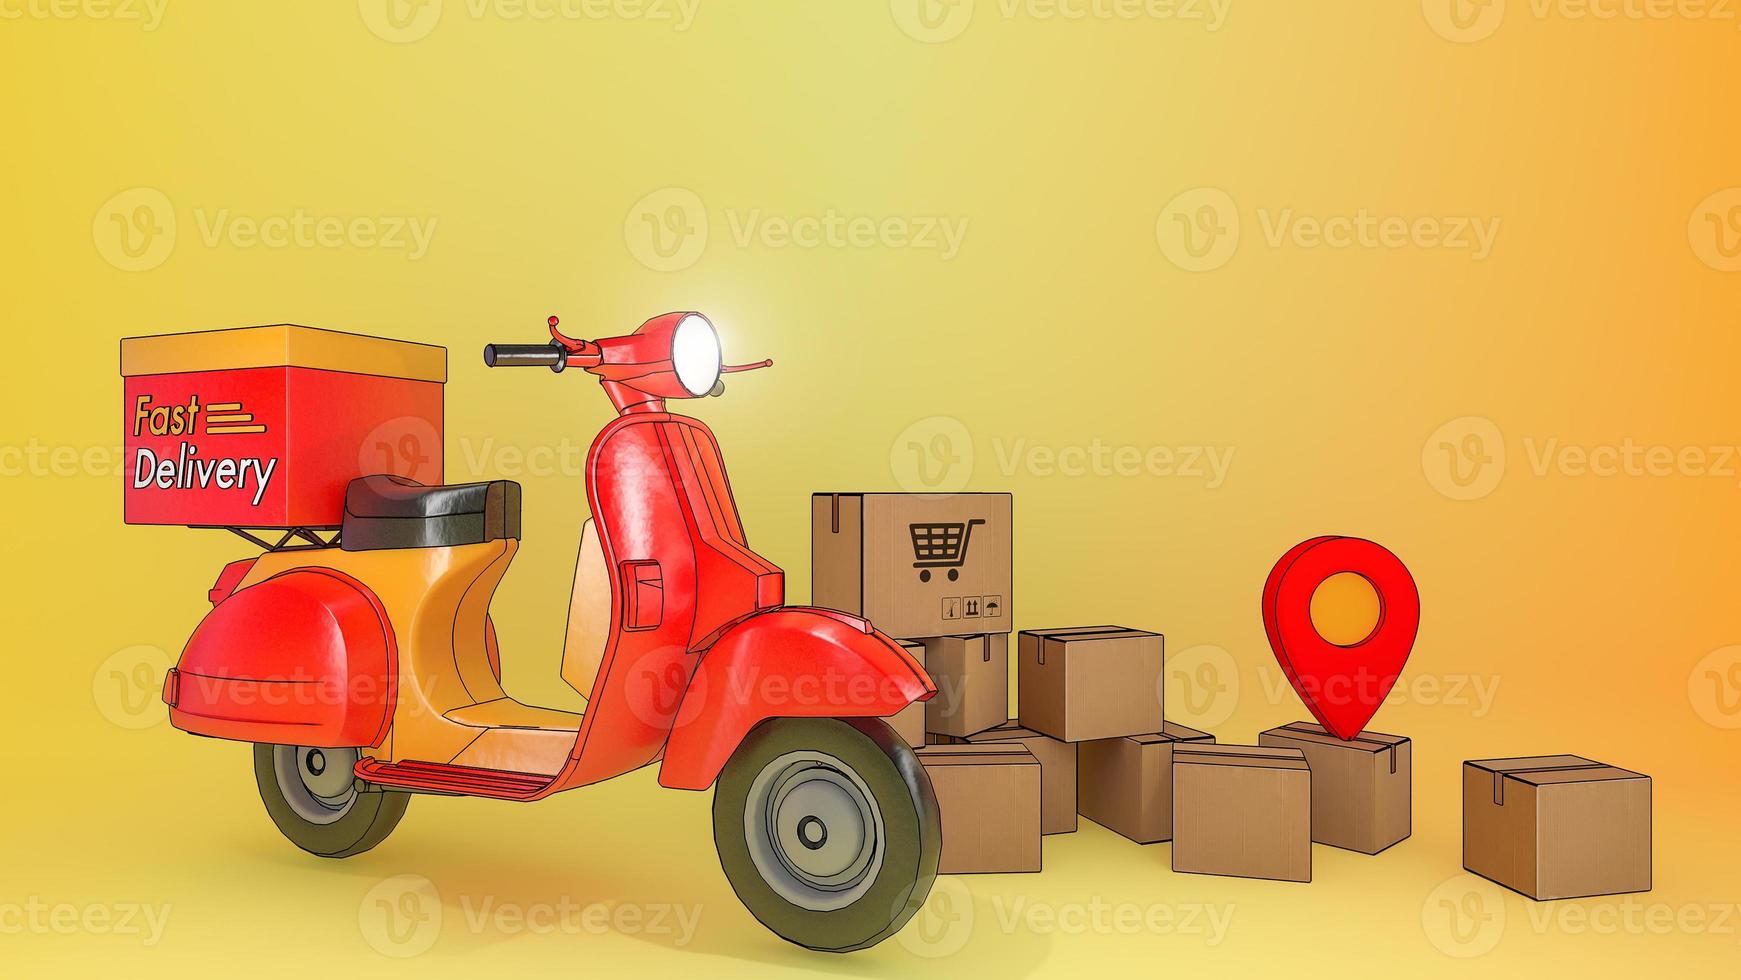 Viele Paketboxen mit Roller., Konzept des schnellen Lieferservice und Online-Shopping., 3D-Illustration mit Objekt-Beschneidungspfad. foto